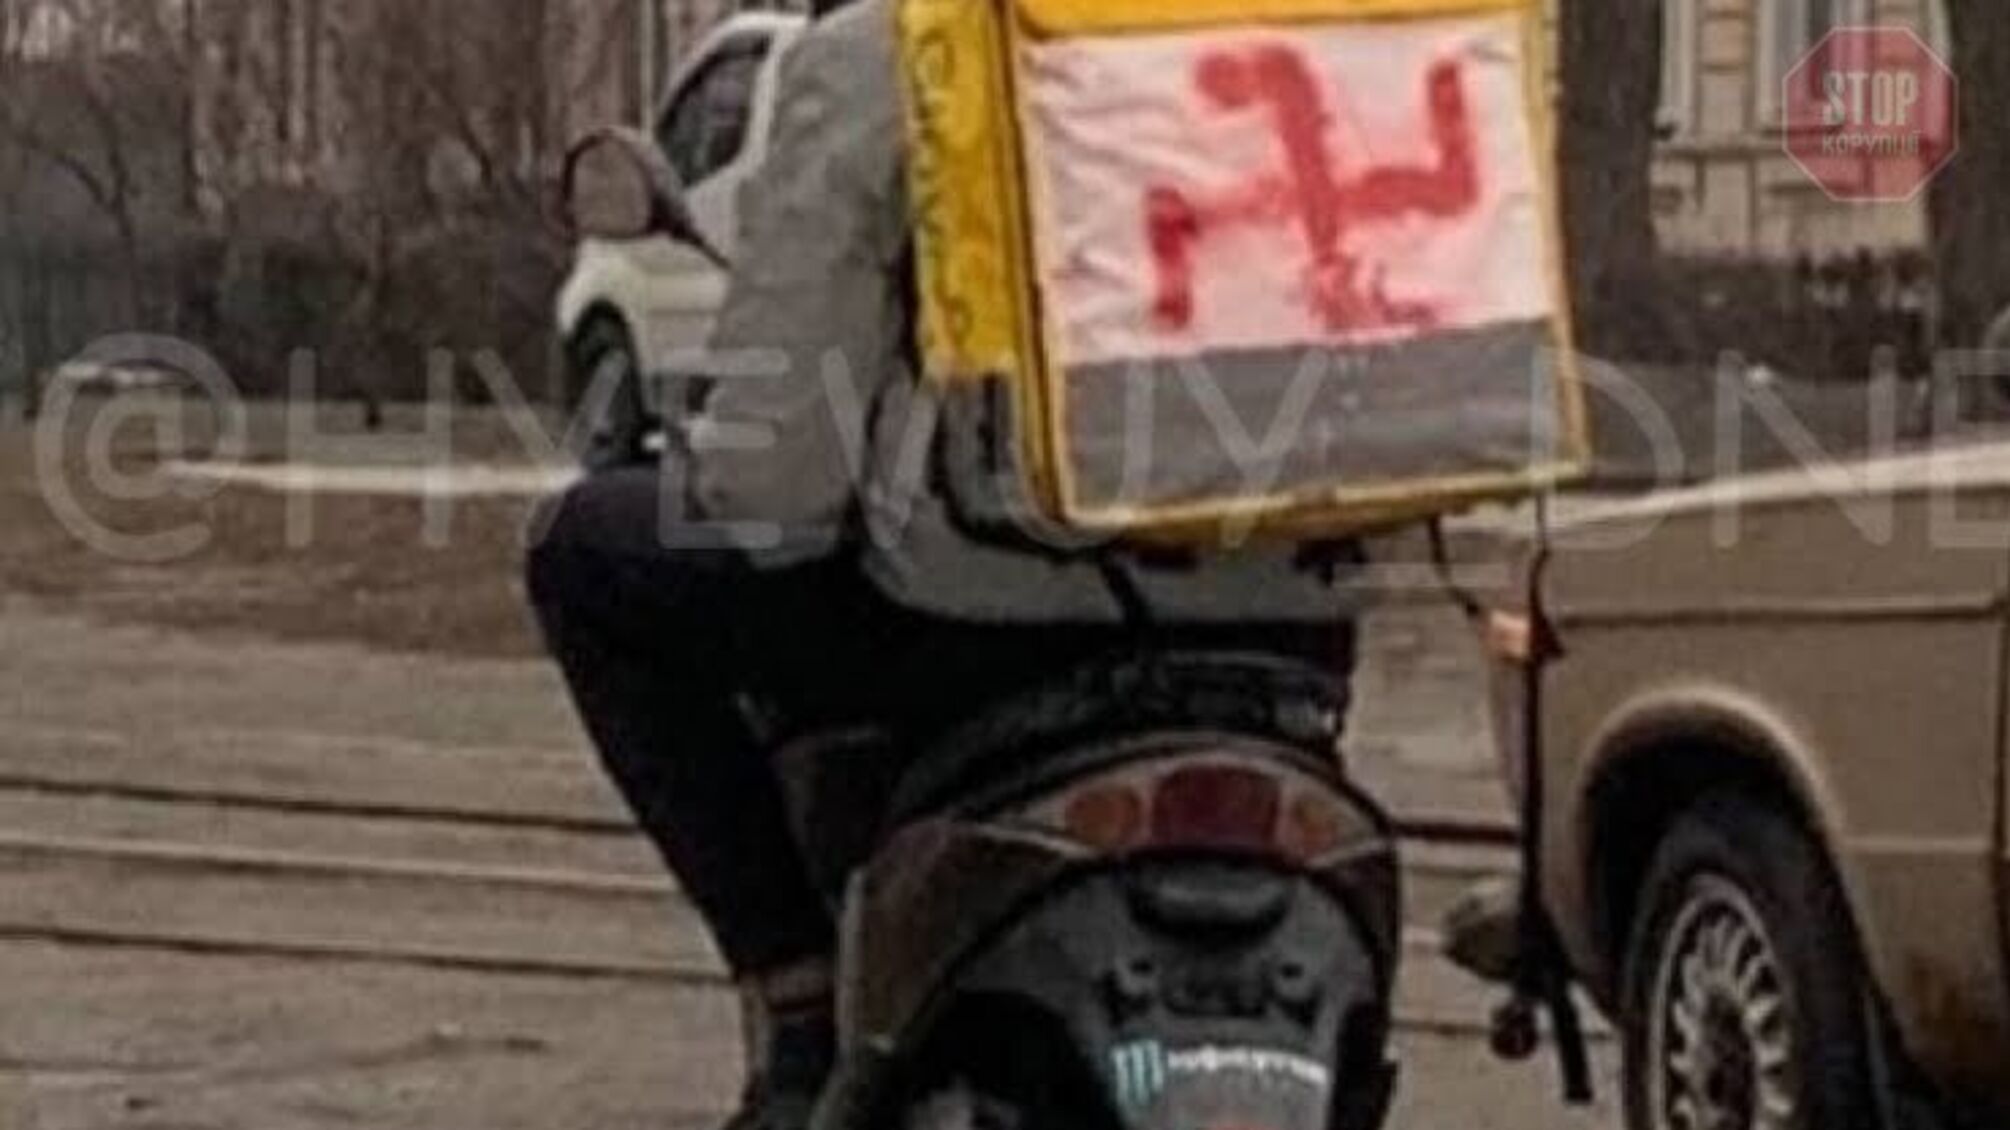 Новости Днепра: в городе увидели мотоциклиста с курьерским рюкзаком со свастикой